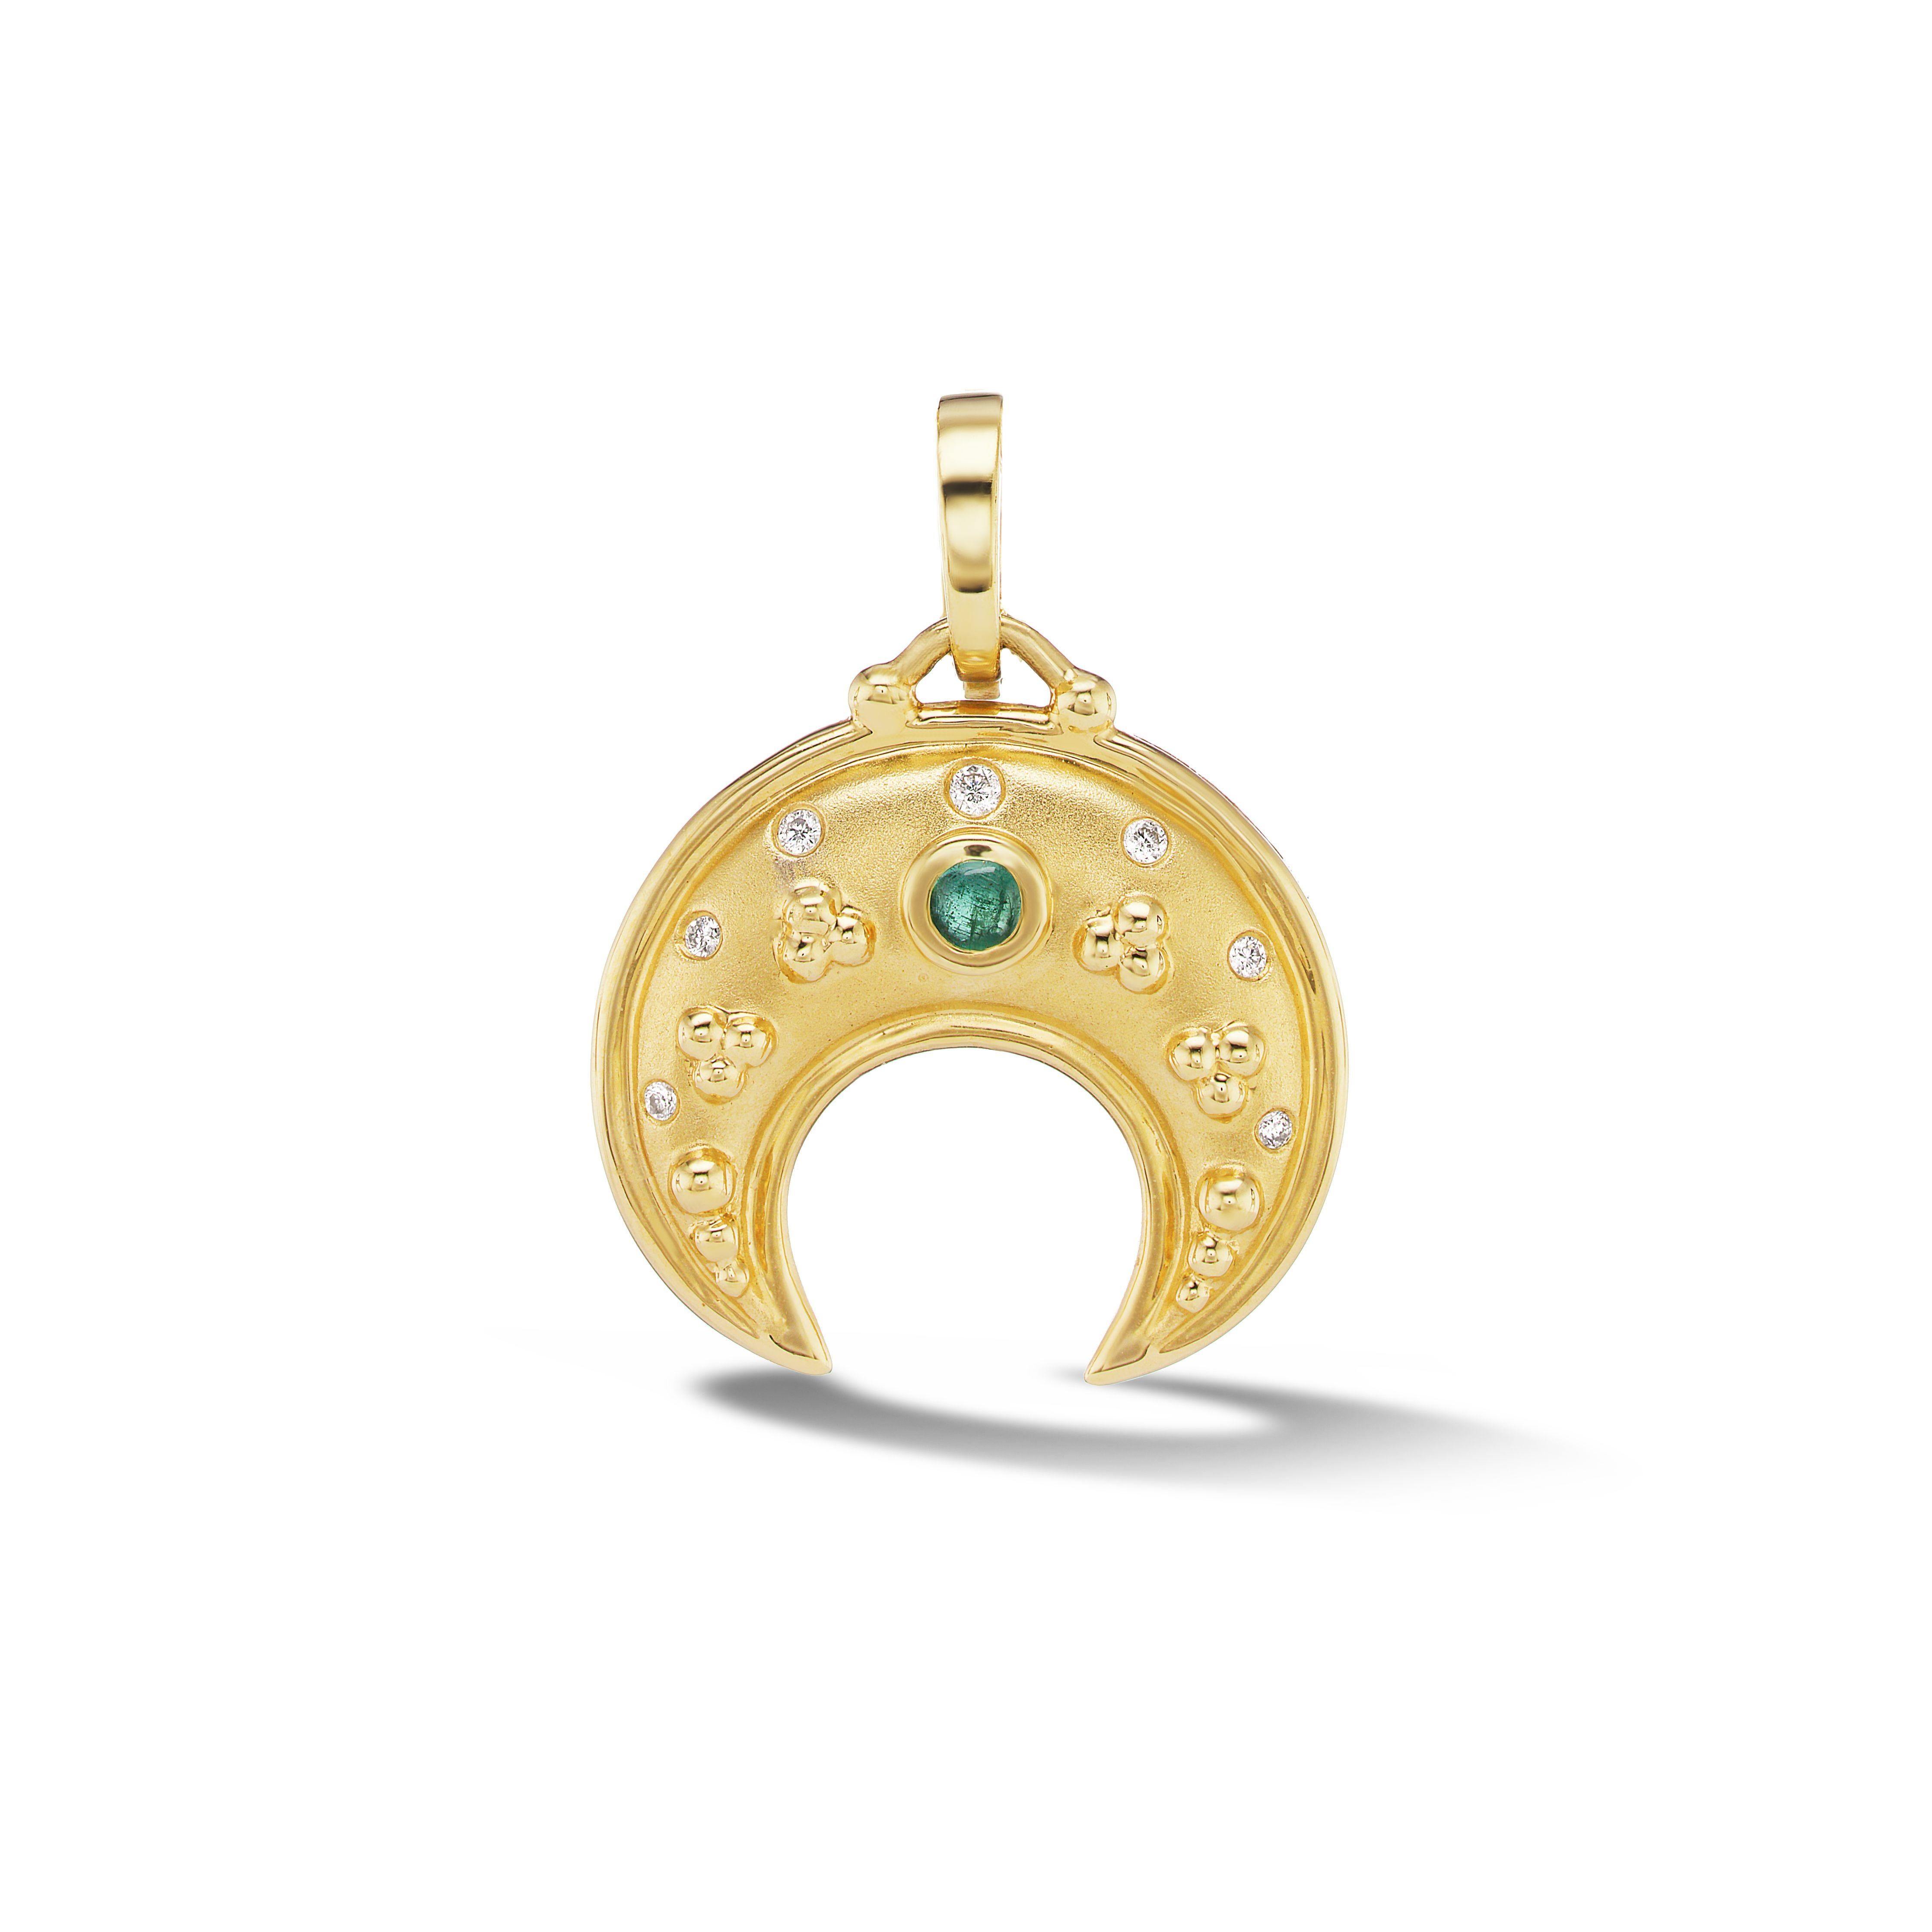 L'amulette lunala est un pendentif en forme de croissant de lune qui était porté par les jeunes filles dans la Rome antique comme porte-bonheur et pour se protéger des forces maléfiques. Notre lunala est orné de granules, typiques d'un charme de